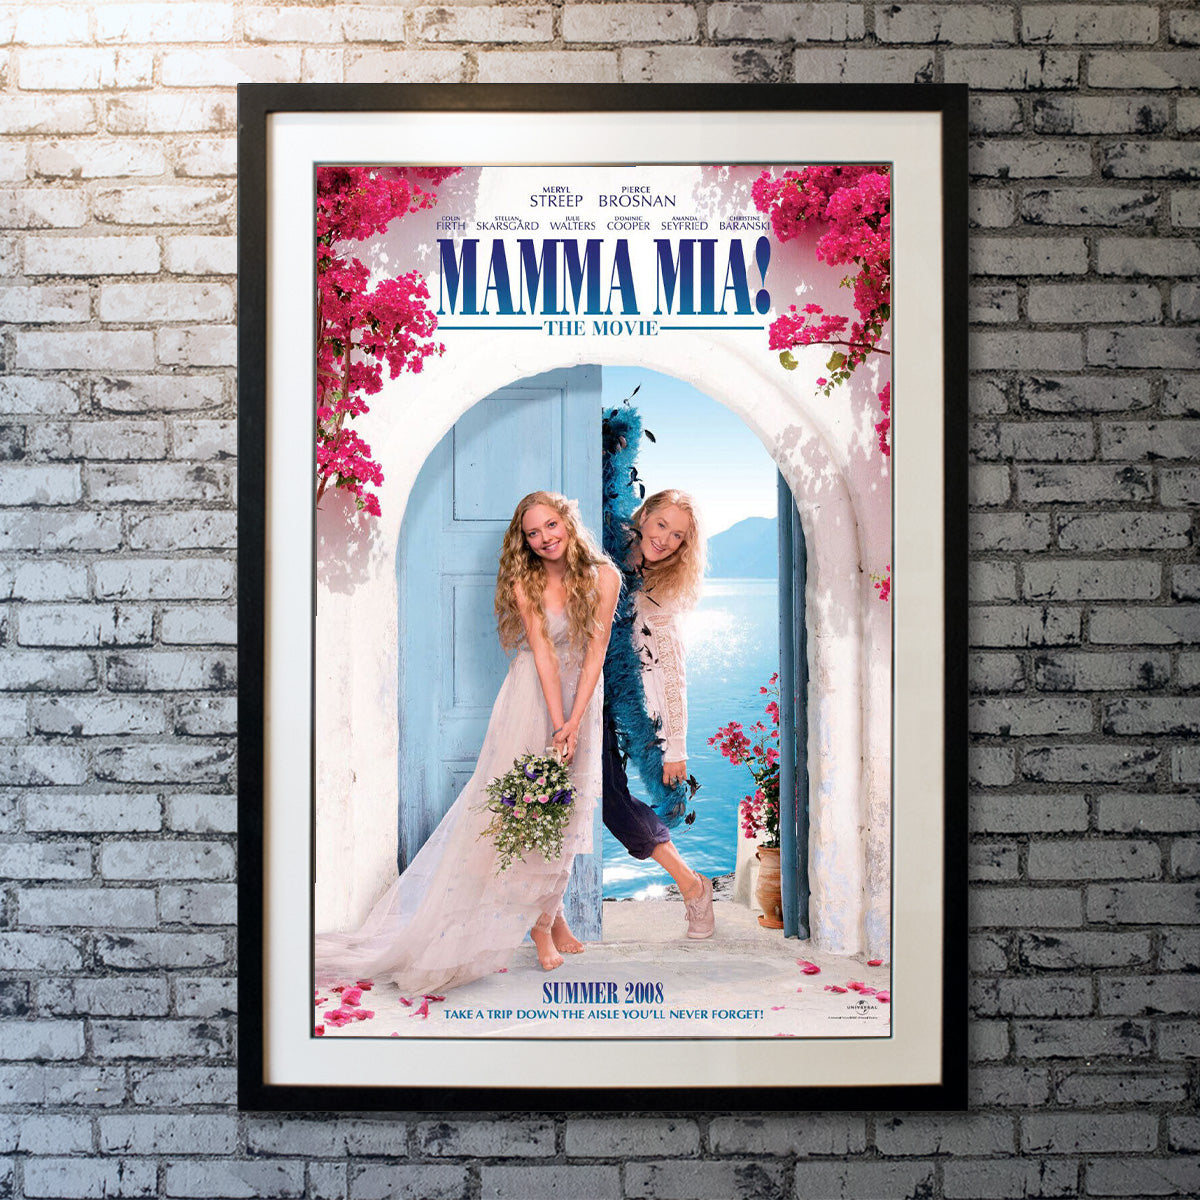 Mamma Mia! (2008)